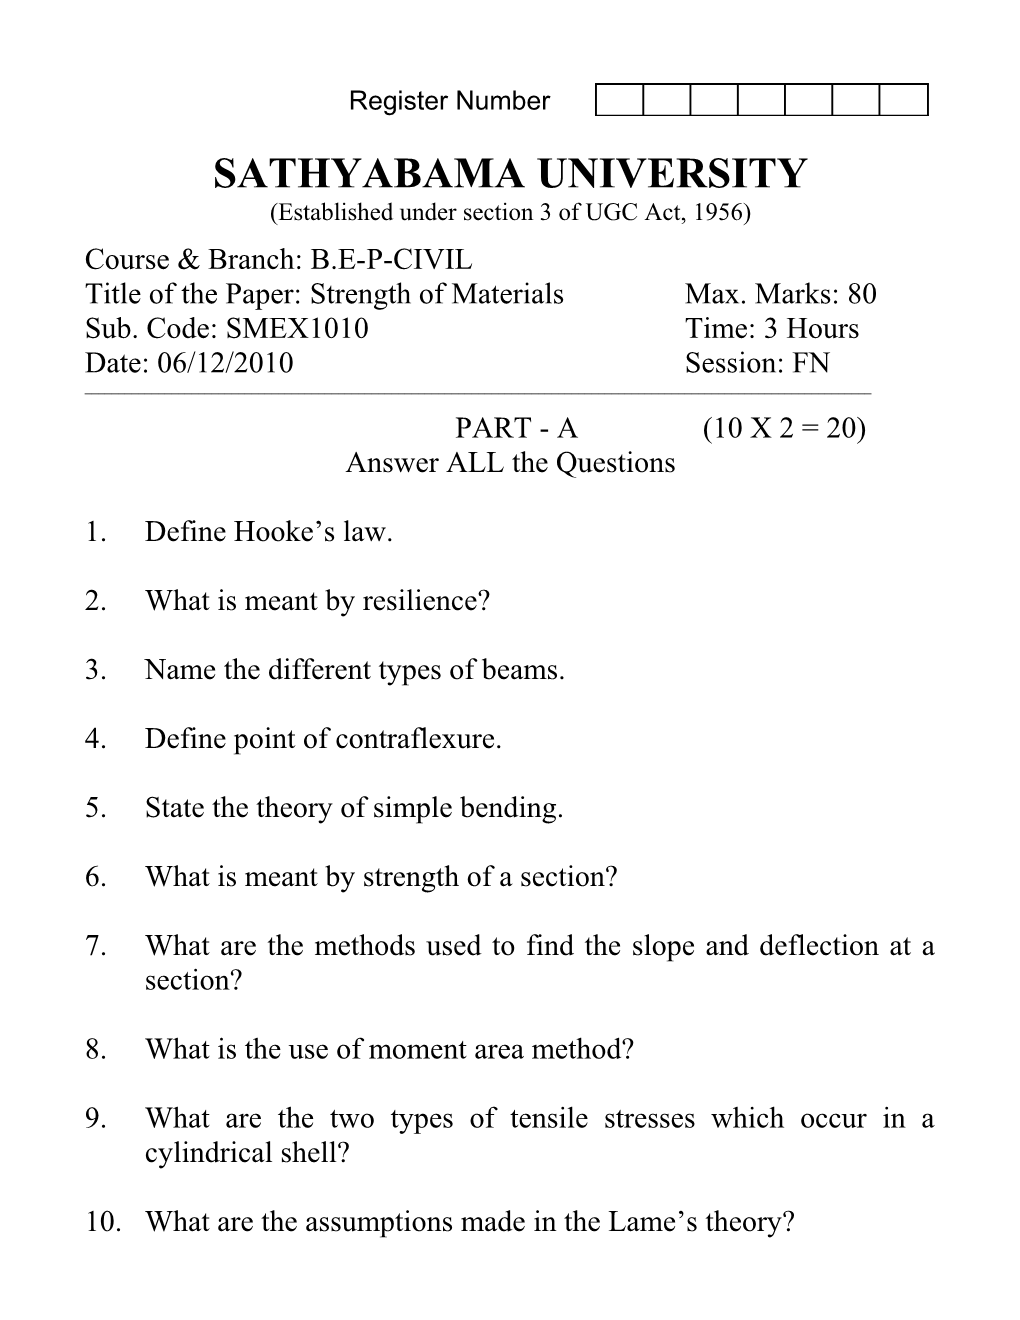 Sathyabama University s1